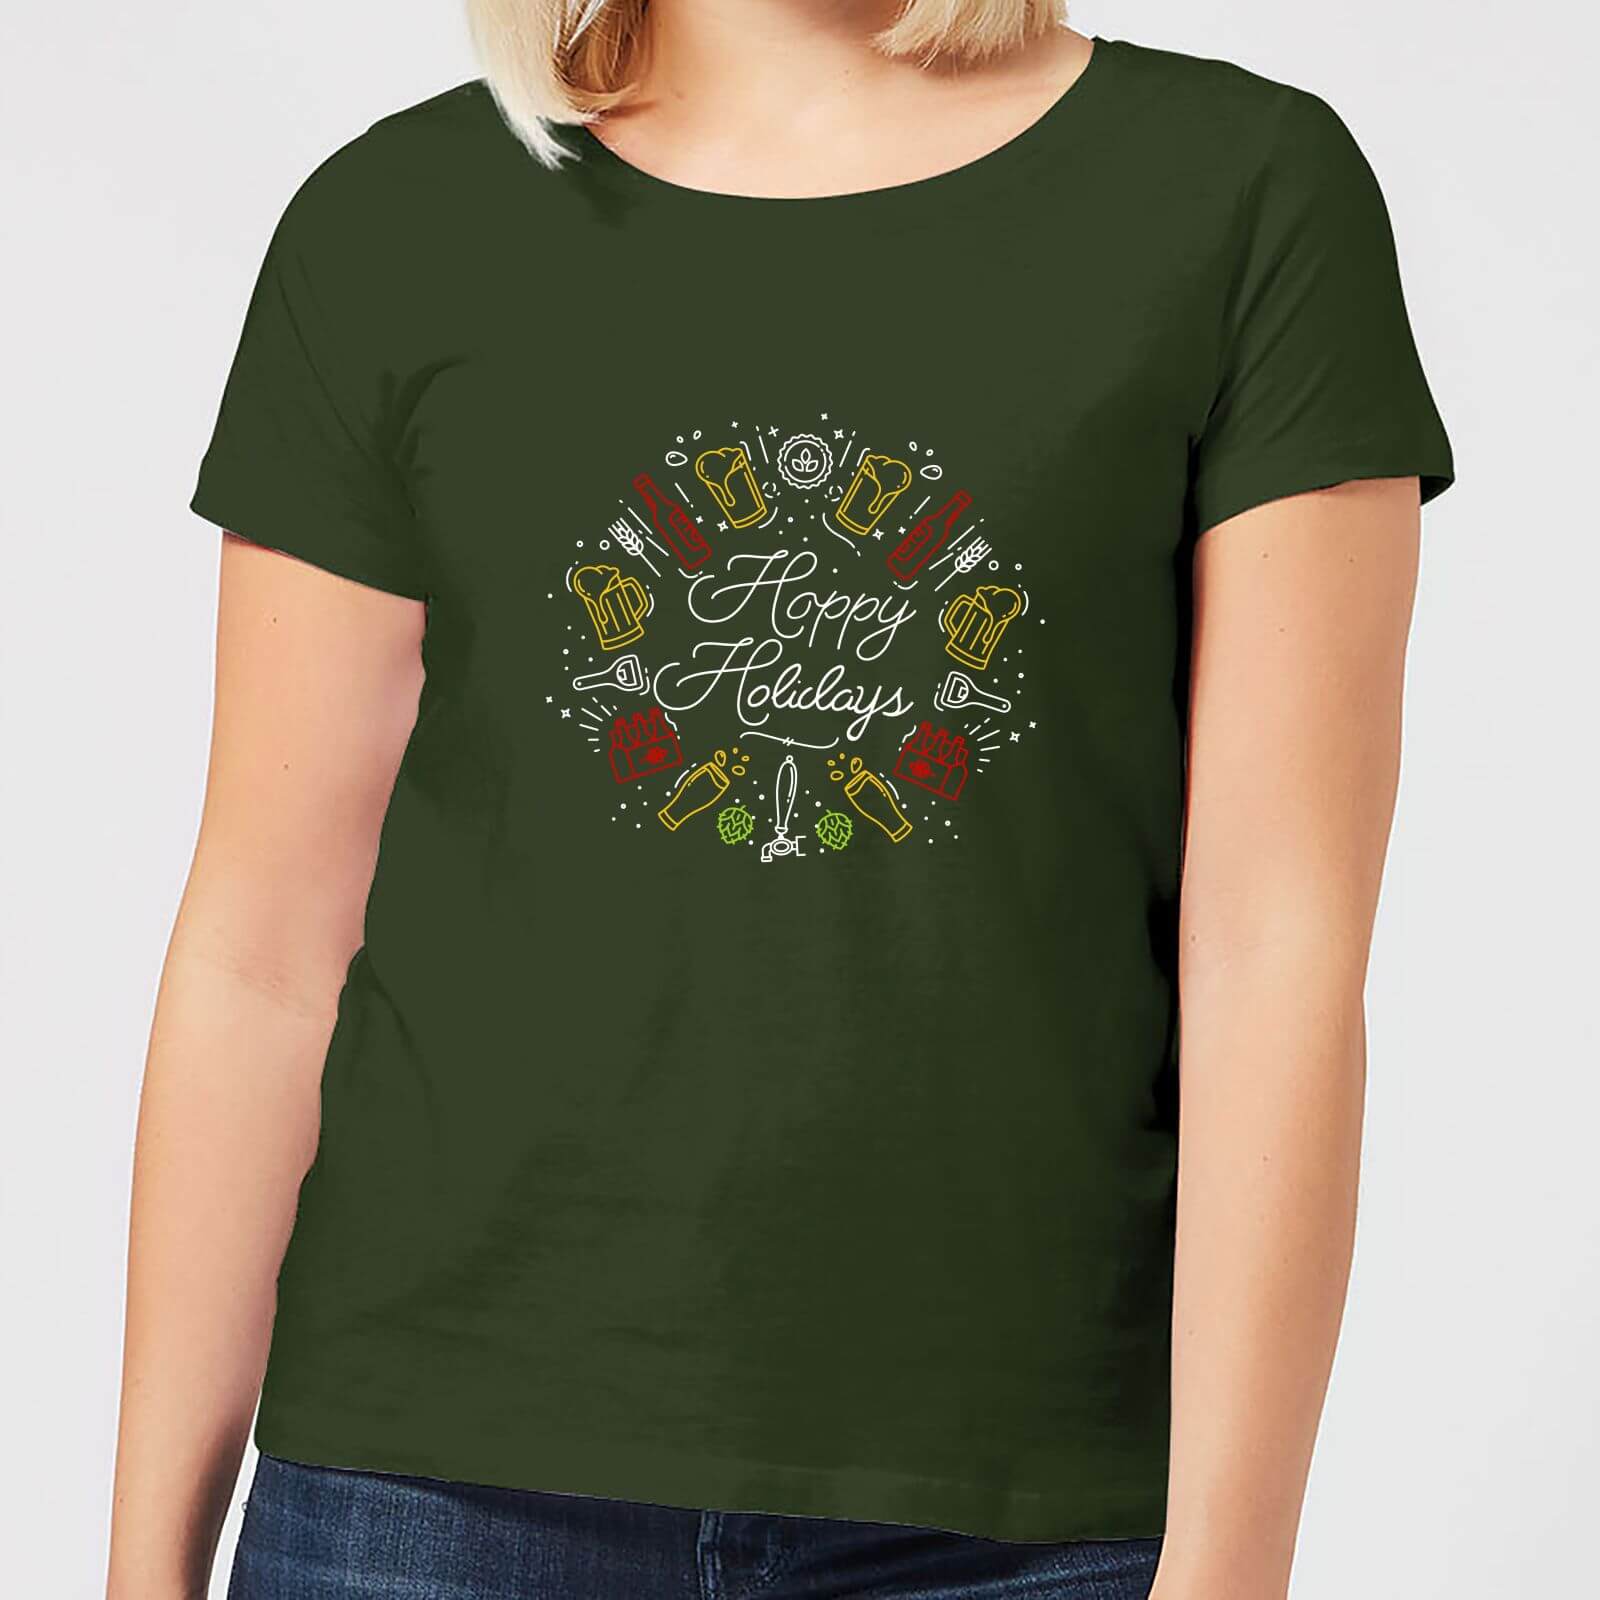 Hoppy Holidays Women's T-Shirt - Forest Green - S - Forest Green